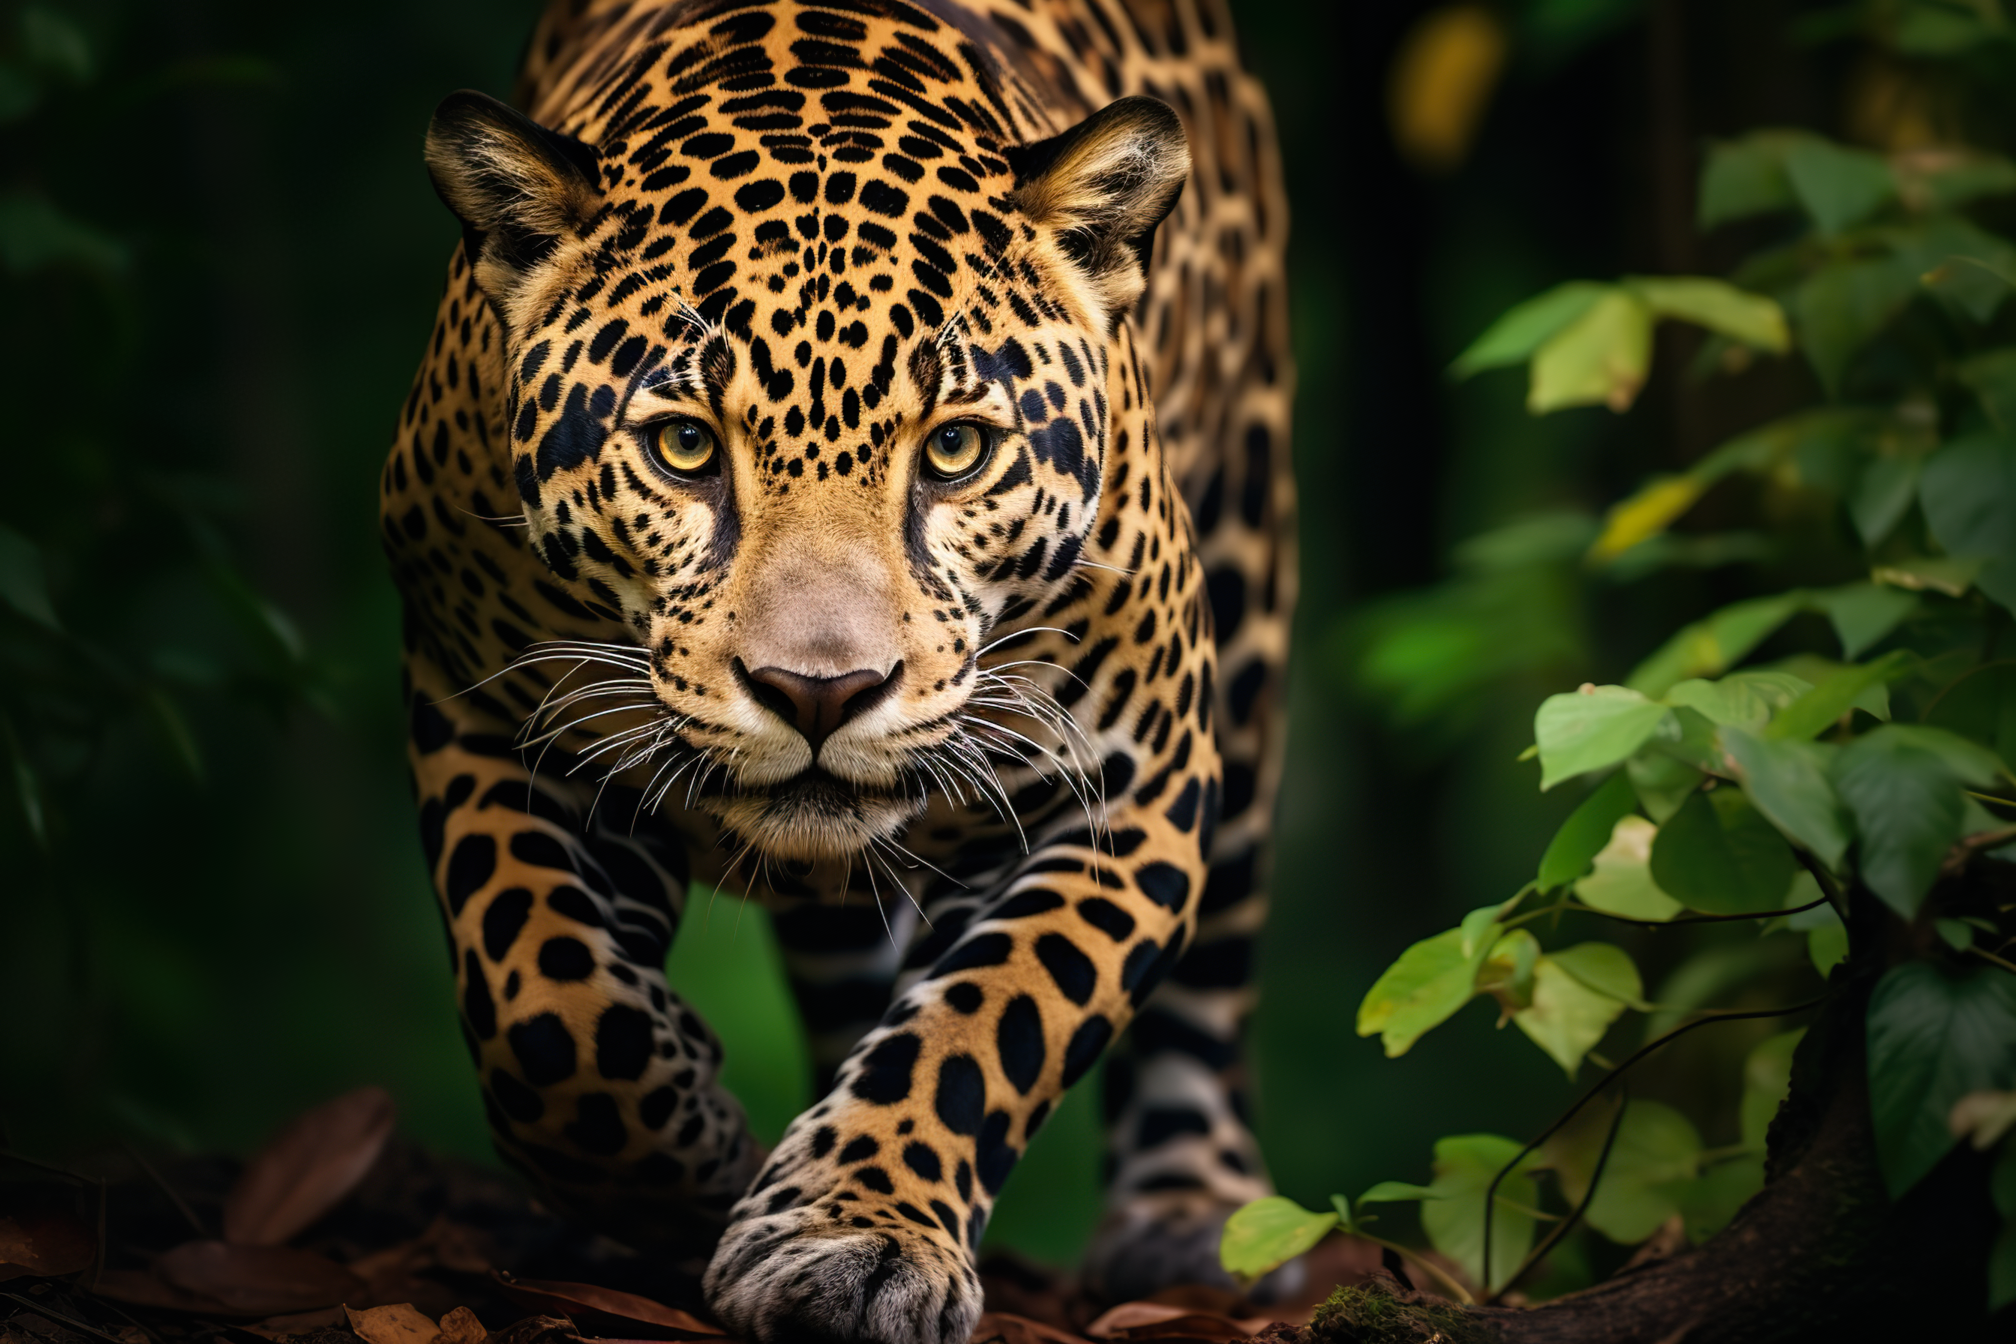 Jaguar roaming in its natural habitat